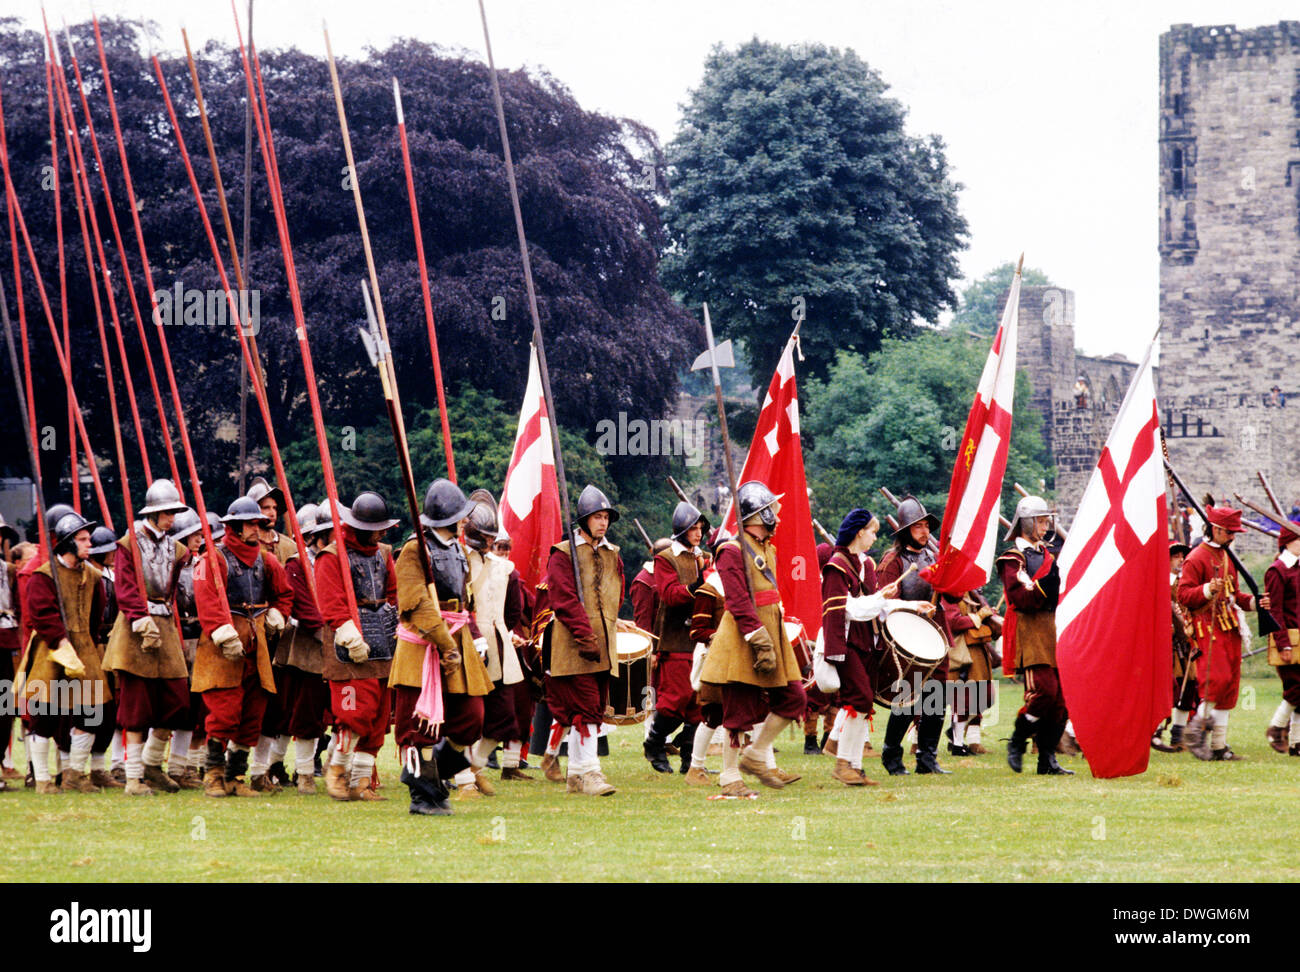 English Civil War Pikemen, flags 17th century, siege of Ashby de la Zouch Castle, Leicestershire, historical re-enactment soldier soldiers uniform uniforms Stock Photo